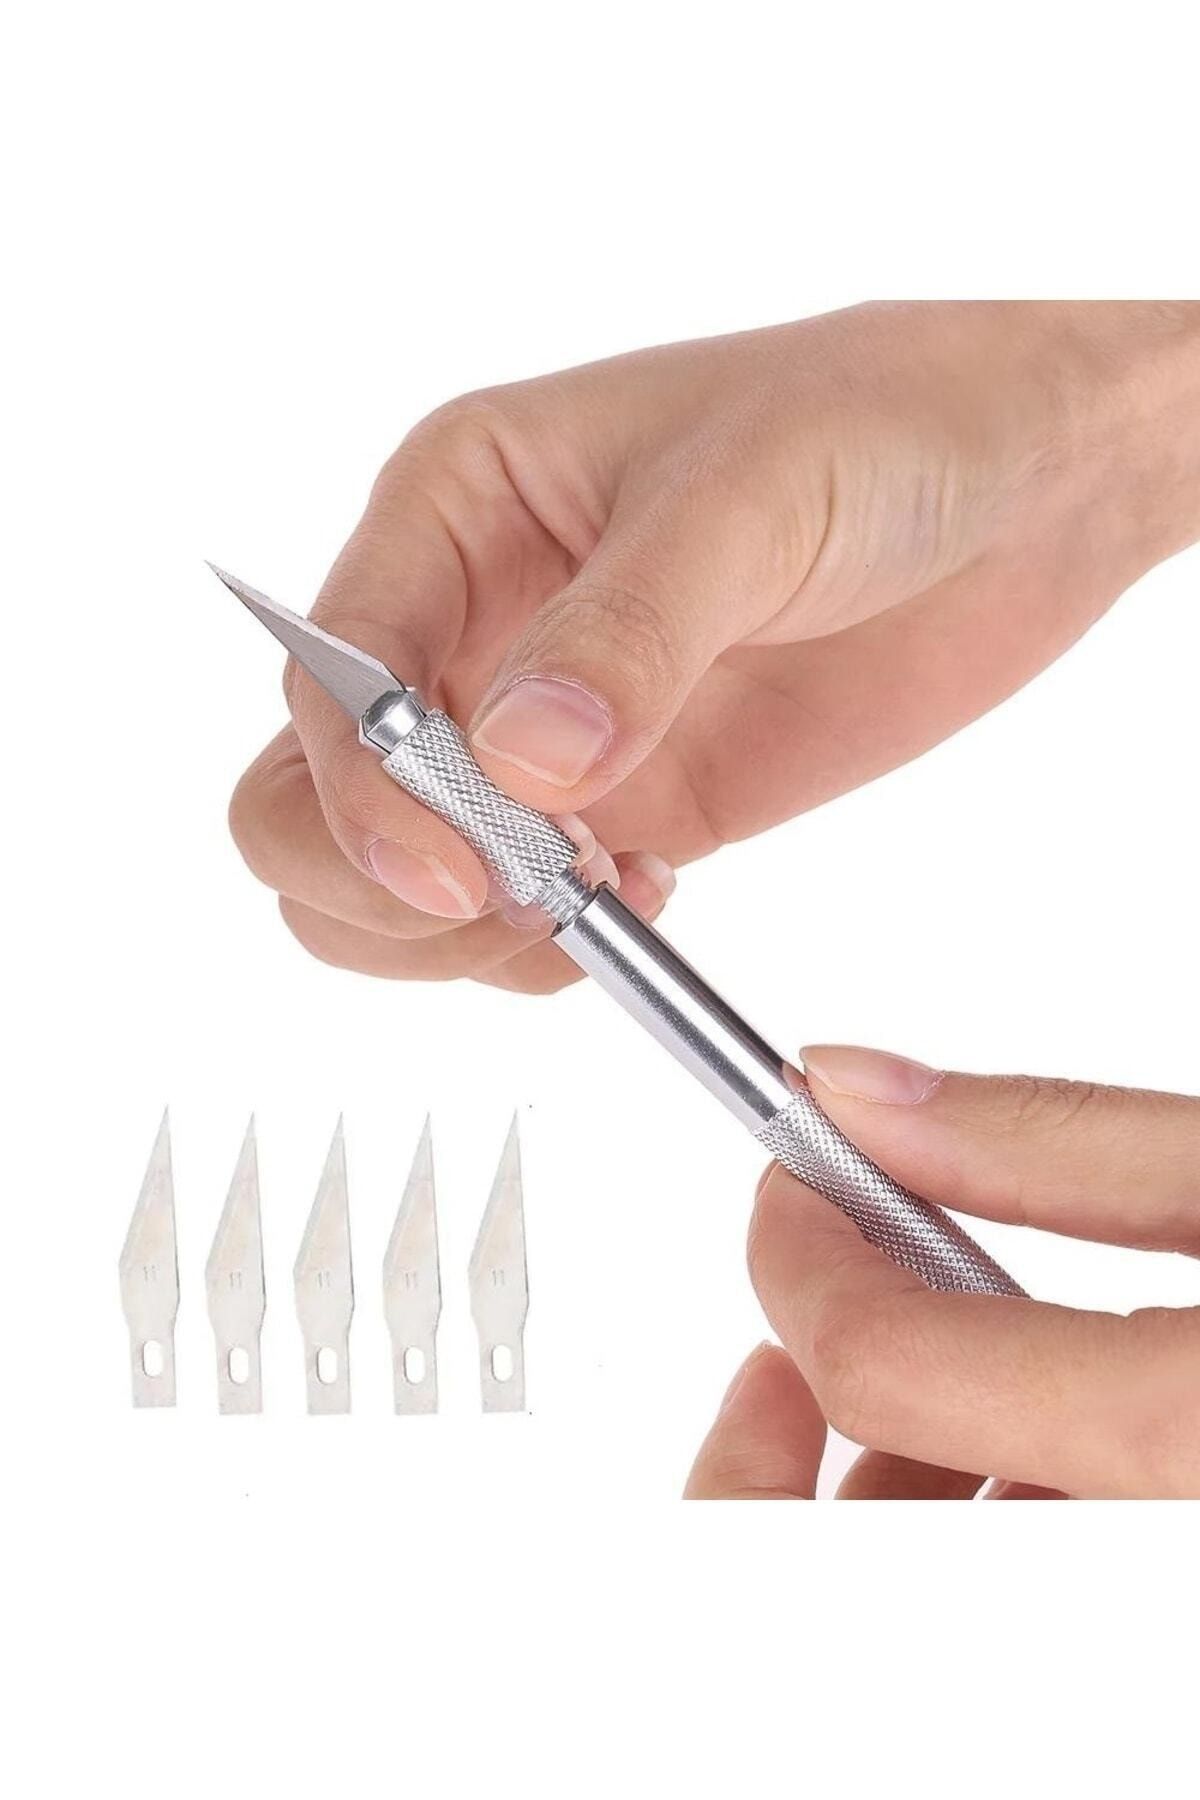 srtfootcare Kretuar Bıçağı, Paslanmaz Çelik Hassas Kesim Bıçağı + 5 Ad.yedek Bıçak